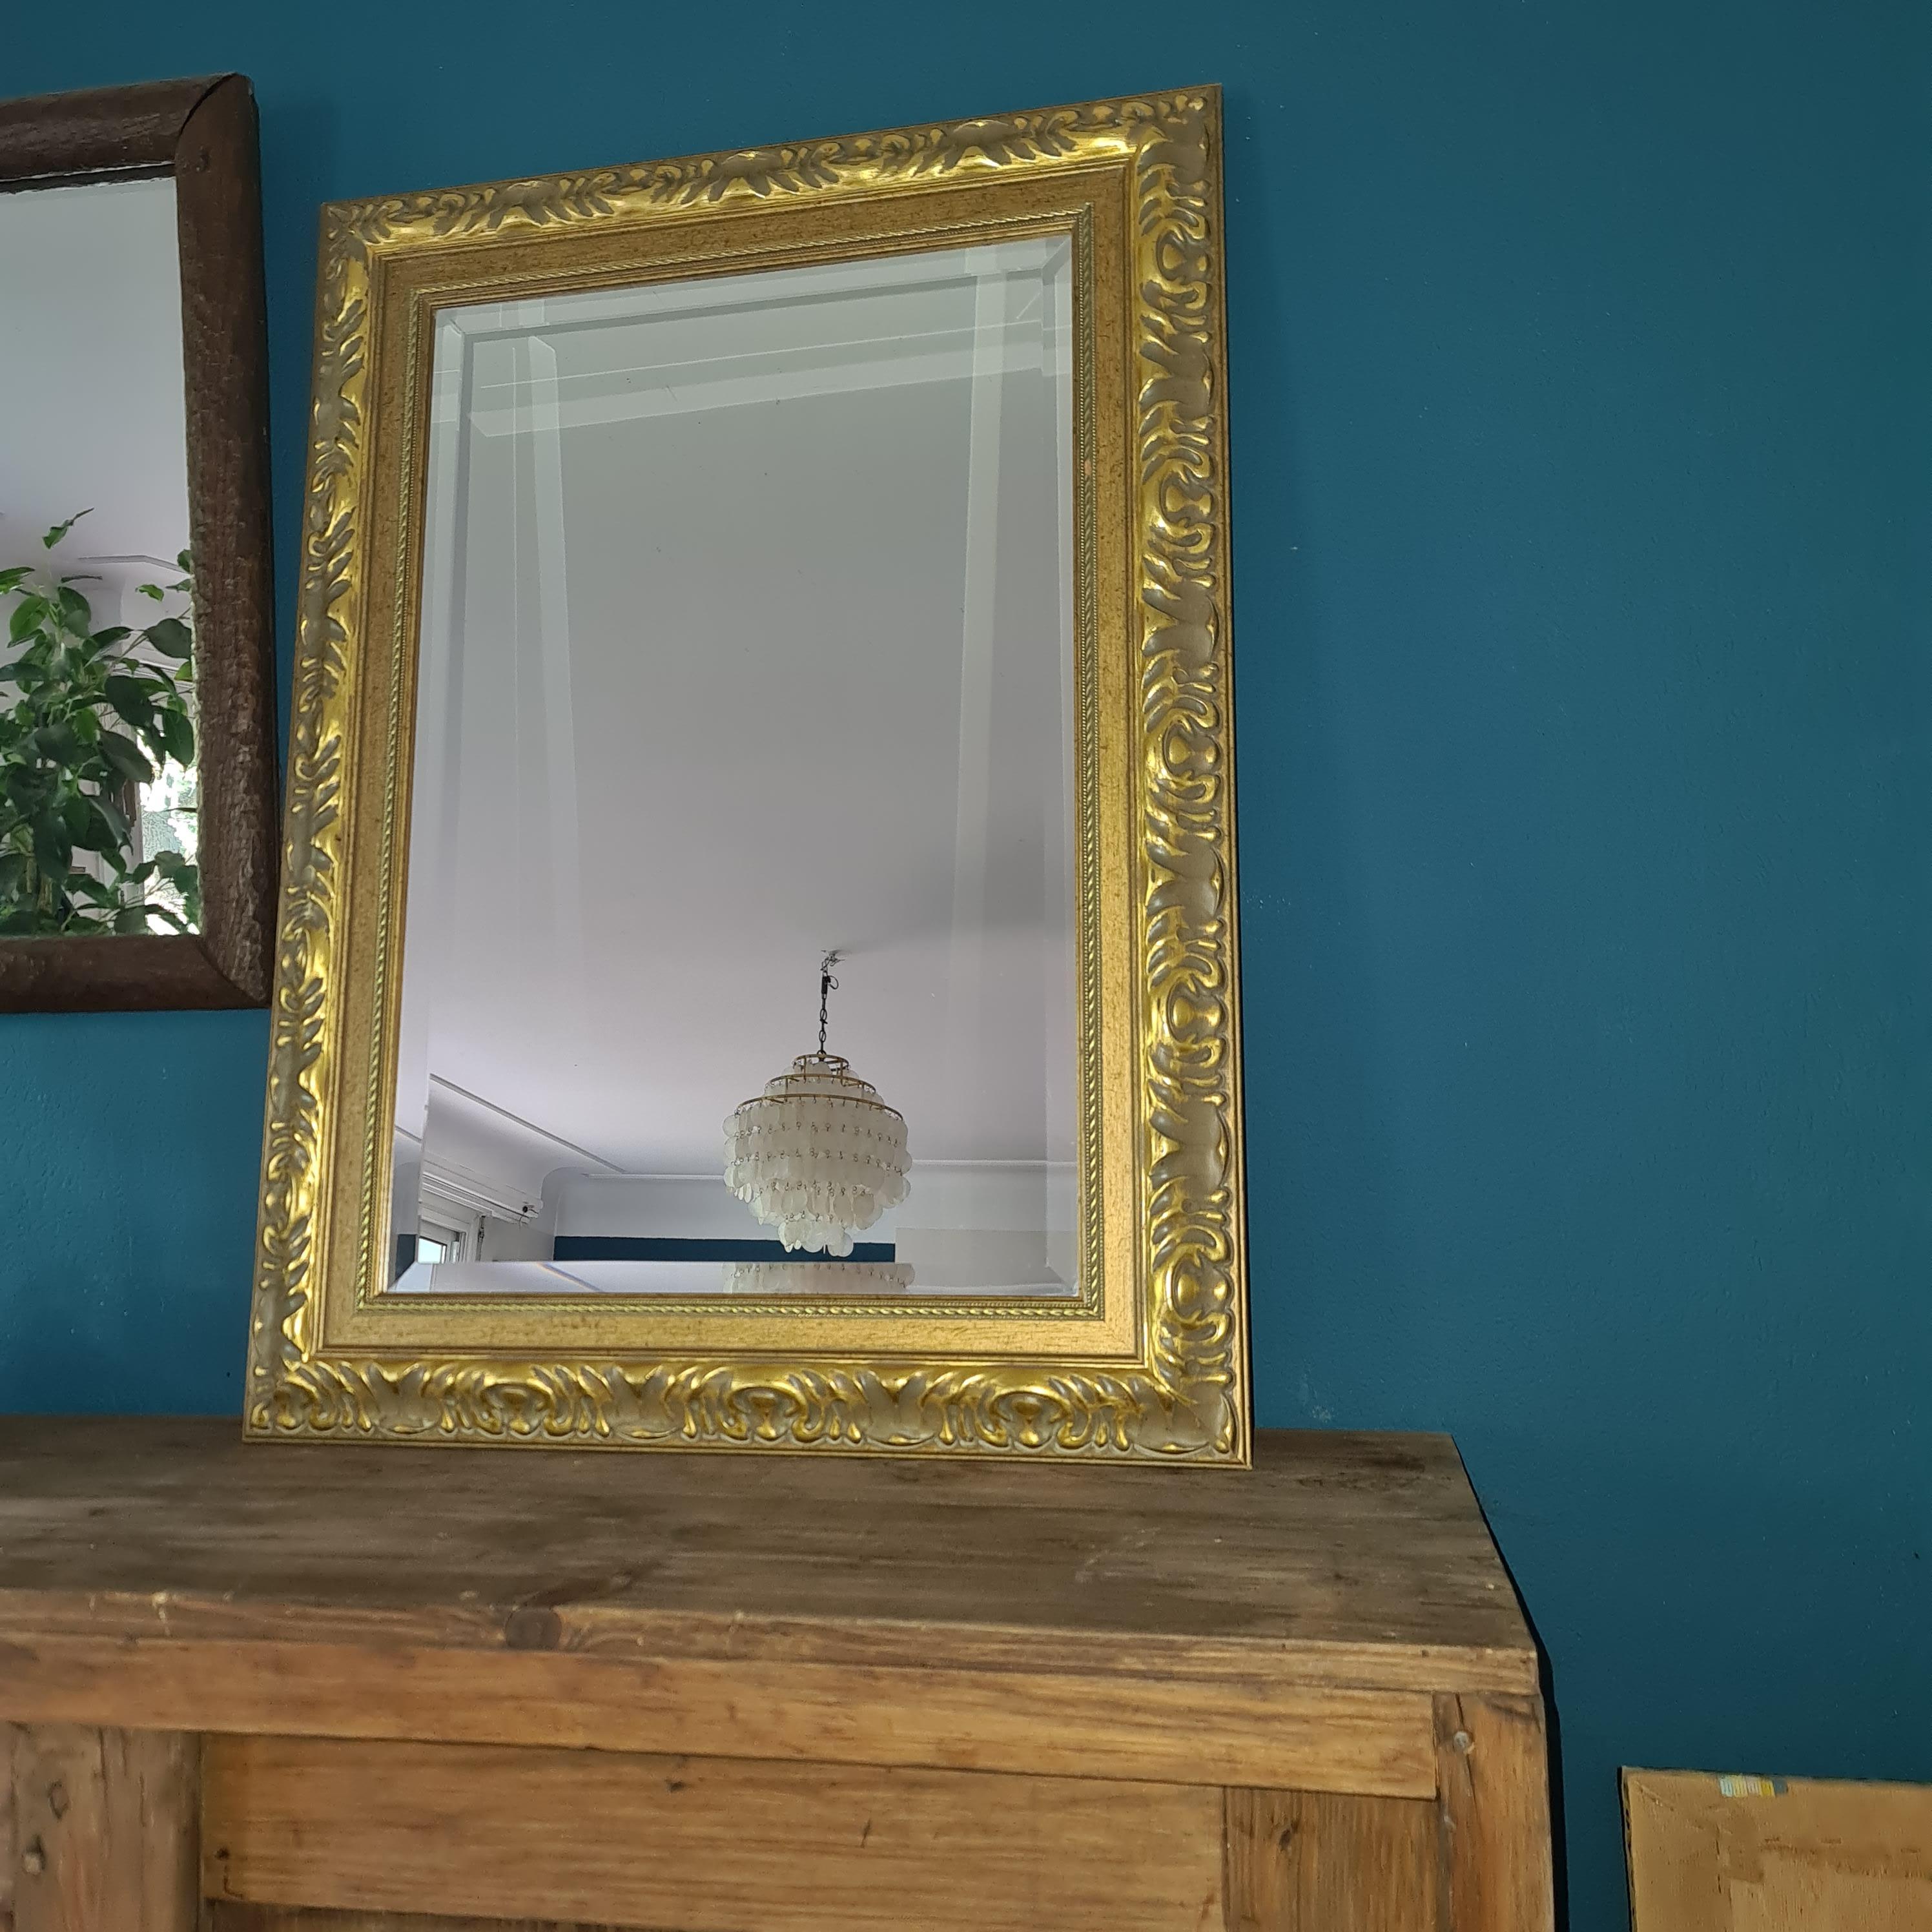 Goldener Holzspiegel im Barockstil: Ein Hauch von zeitloser Eleganz

Träumen Sie davon, Ihrer Einrichtung einen Hauch von Opulenz zu verleihen? Suchen Sie nicht weiter! Wir präsentieren Ihnen diesen prächtigen Spiegel aus vergoldetem Holz im